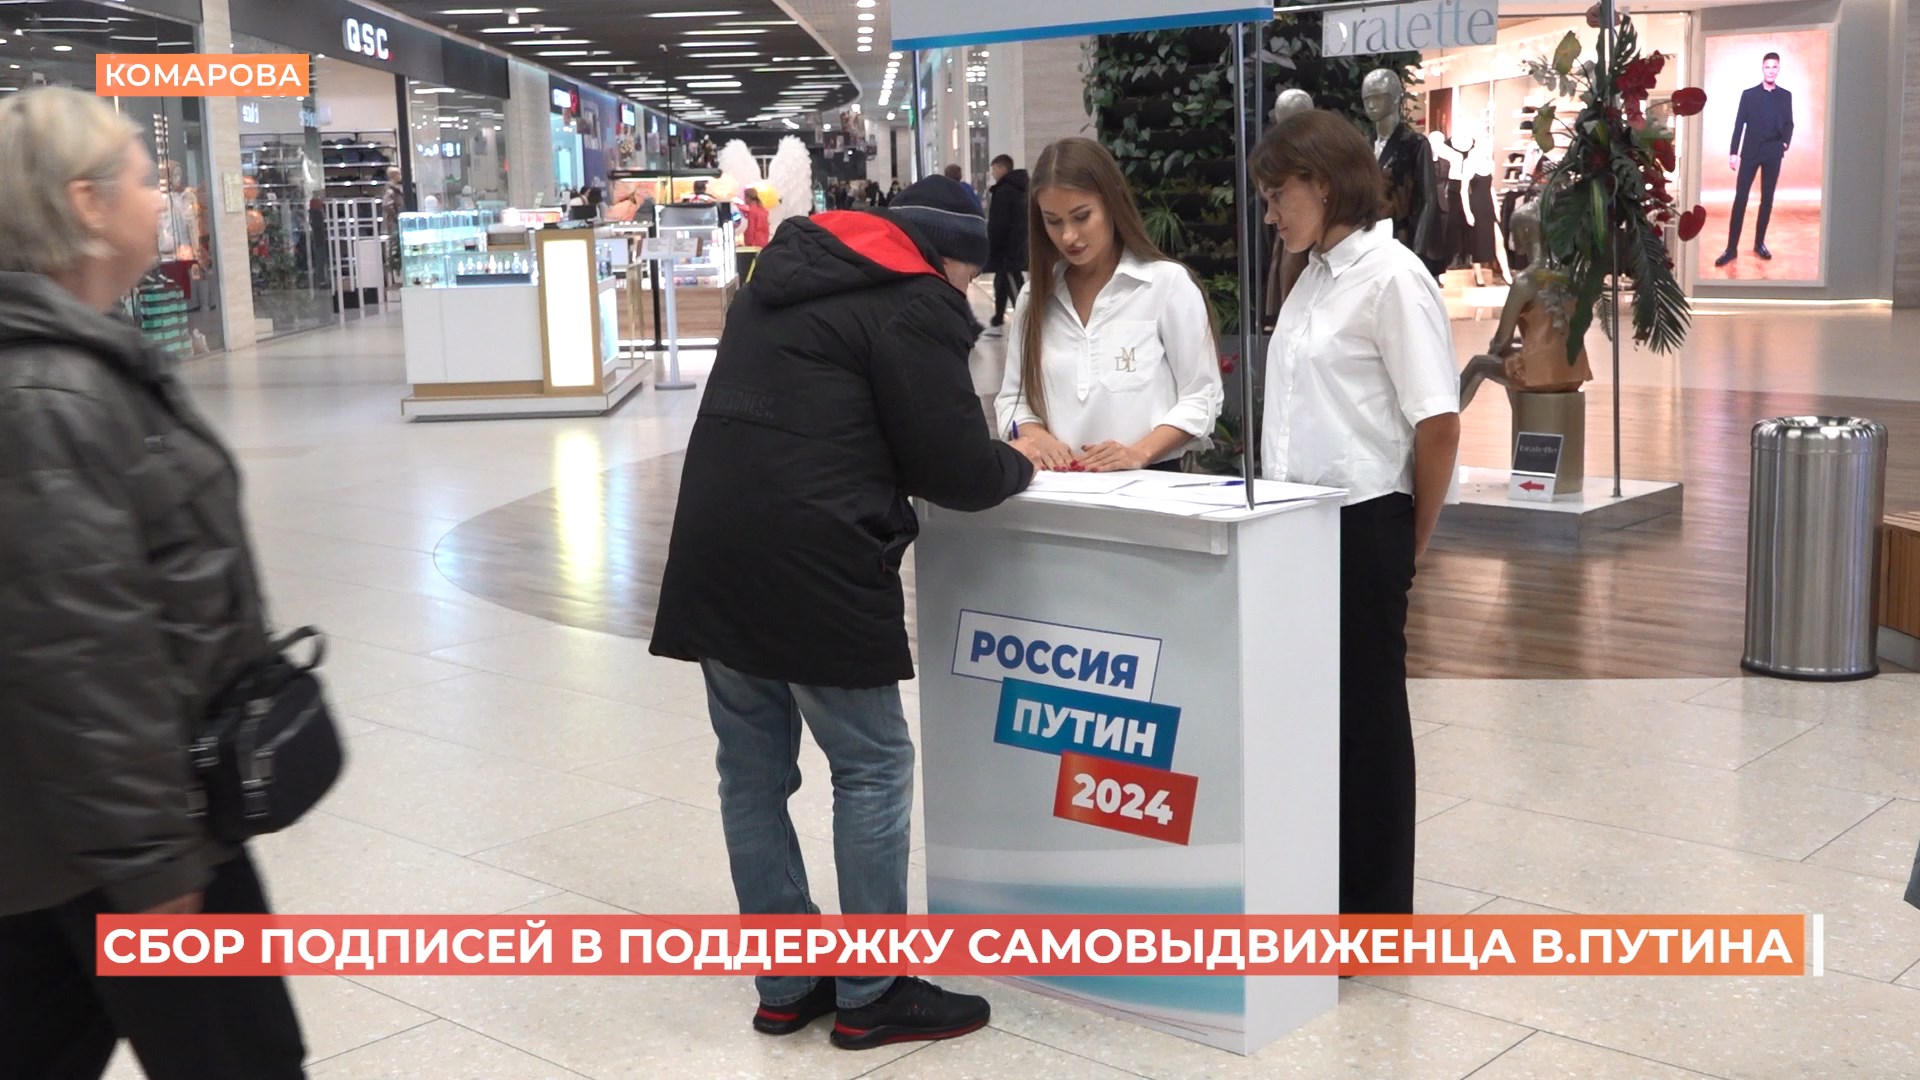 32 пункта сбора подписей в поддержку участия Владимира Путина в выборах президента открыты в Ростовской области